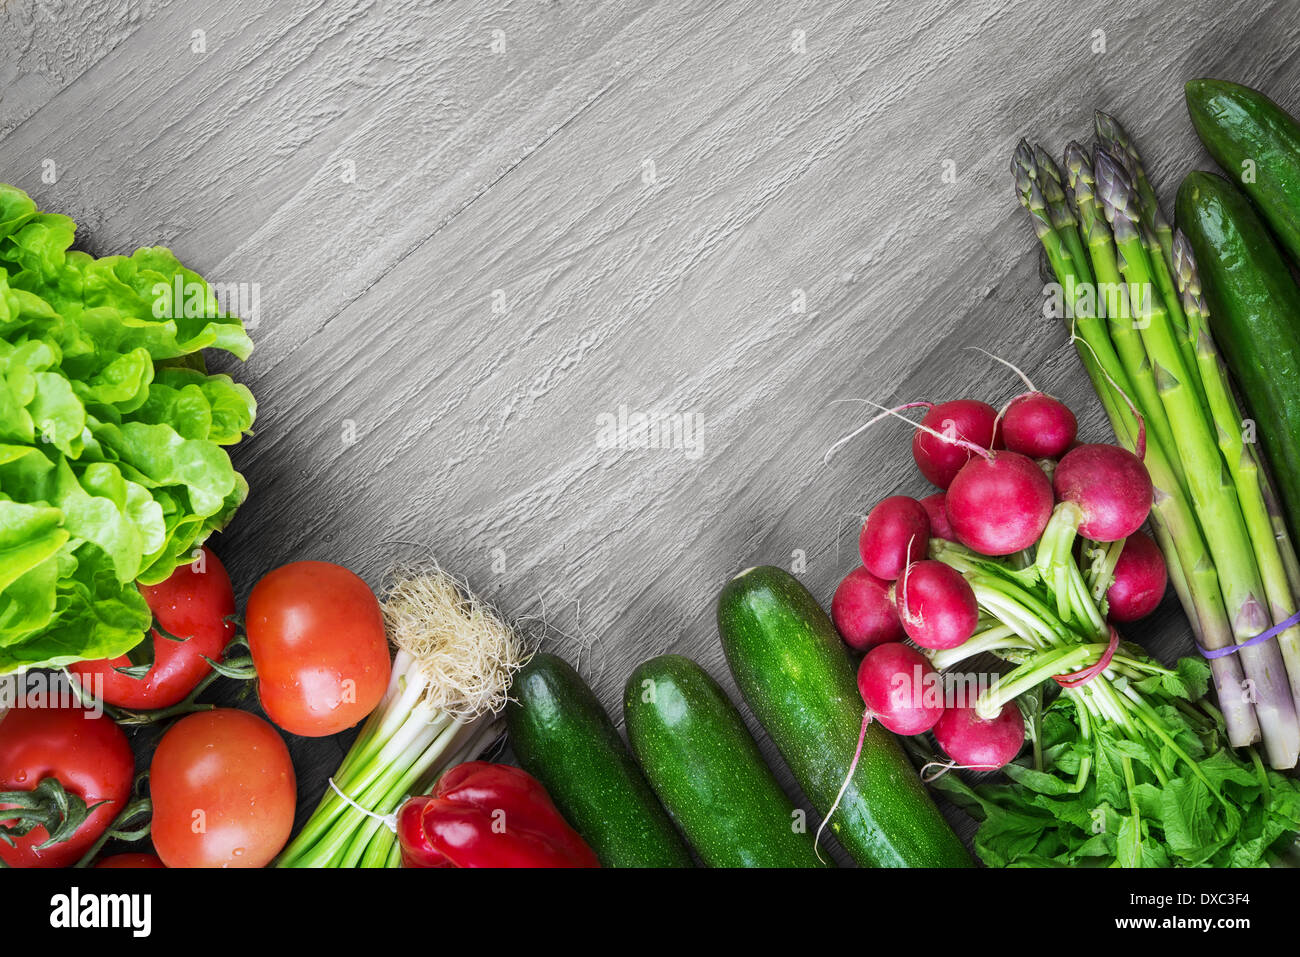 Fresche verdure organiche su legno tabella vintage Foto Stock